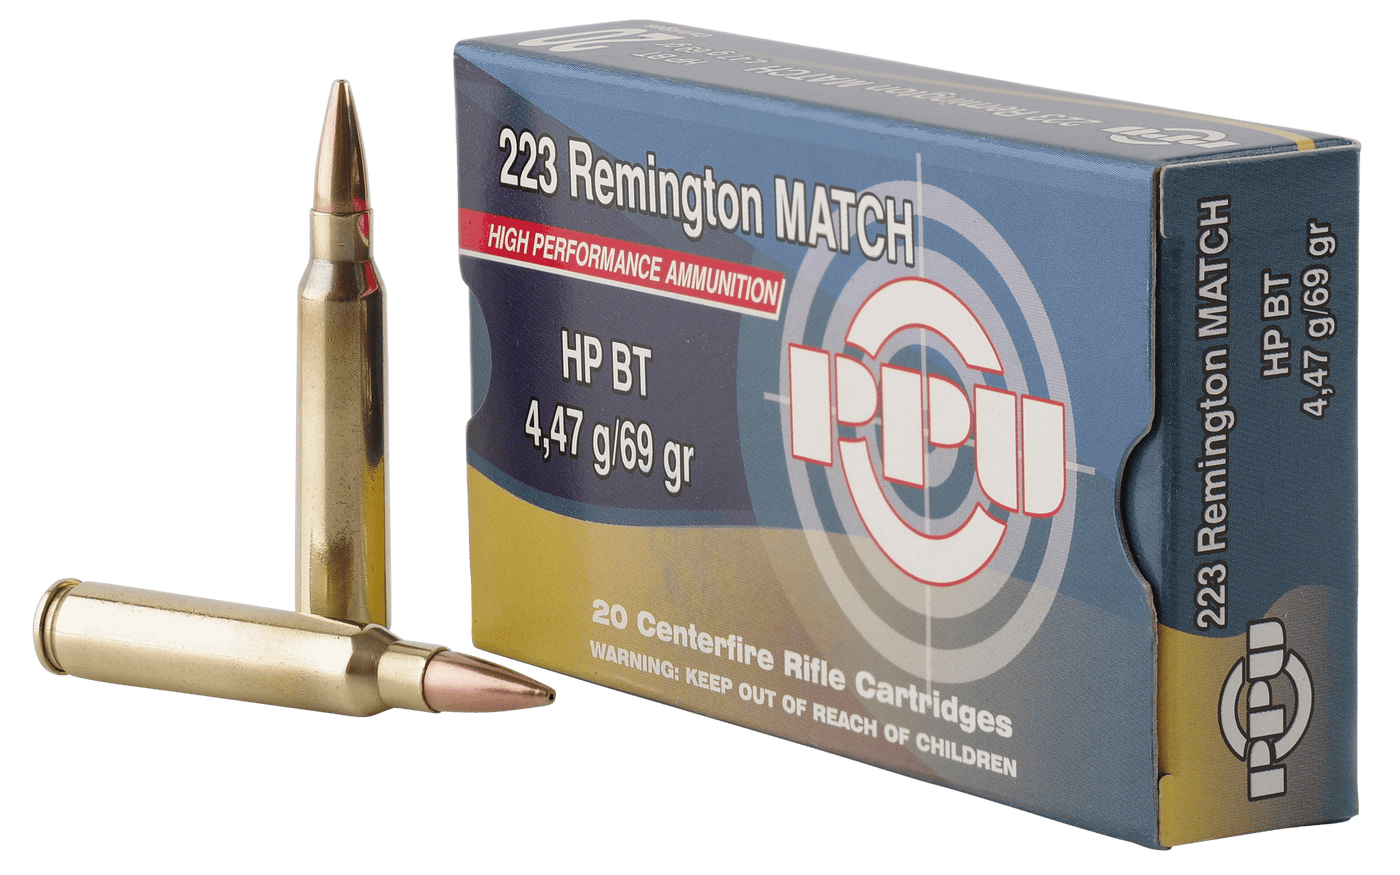 PPU Ppu Match, Ppu Ppm2231     223          69 Hpbt Match   20/50 Ammo